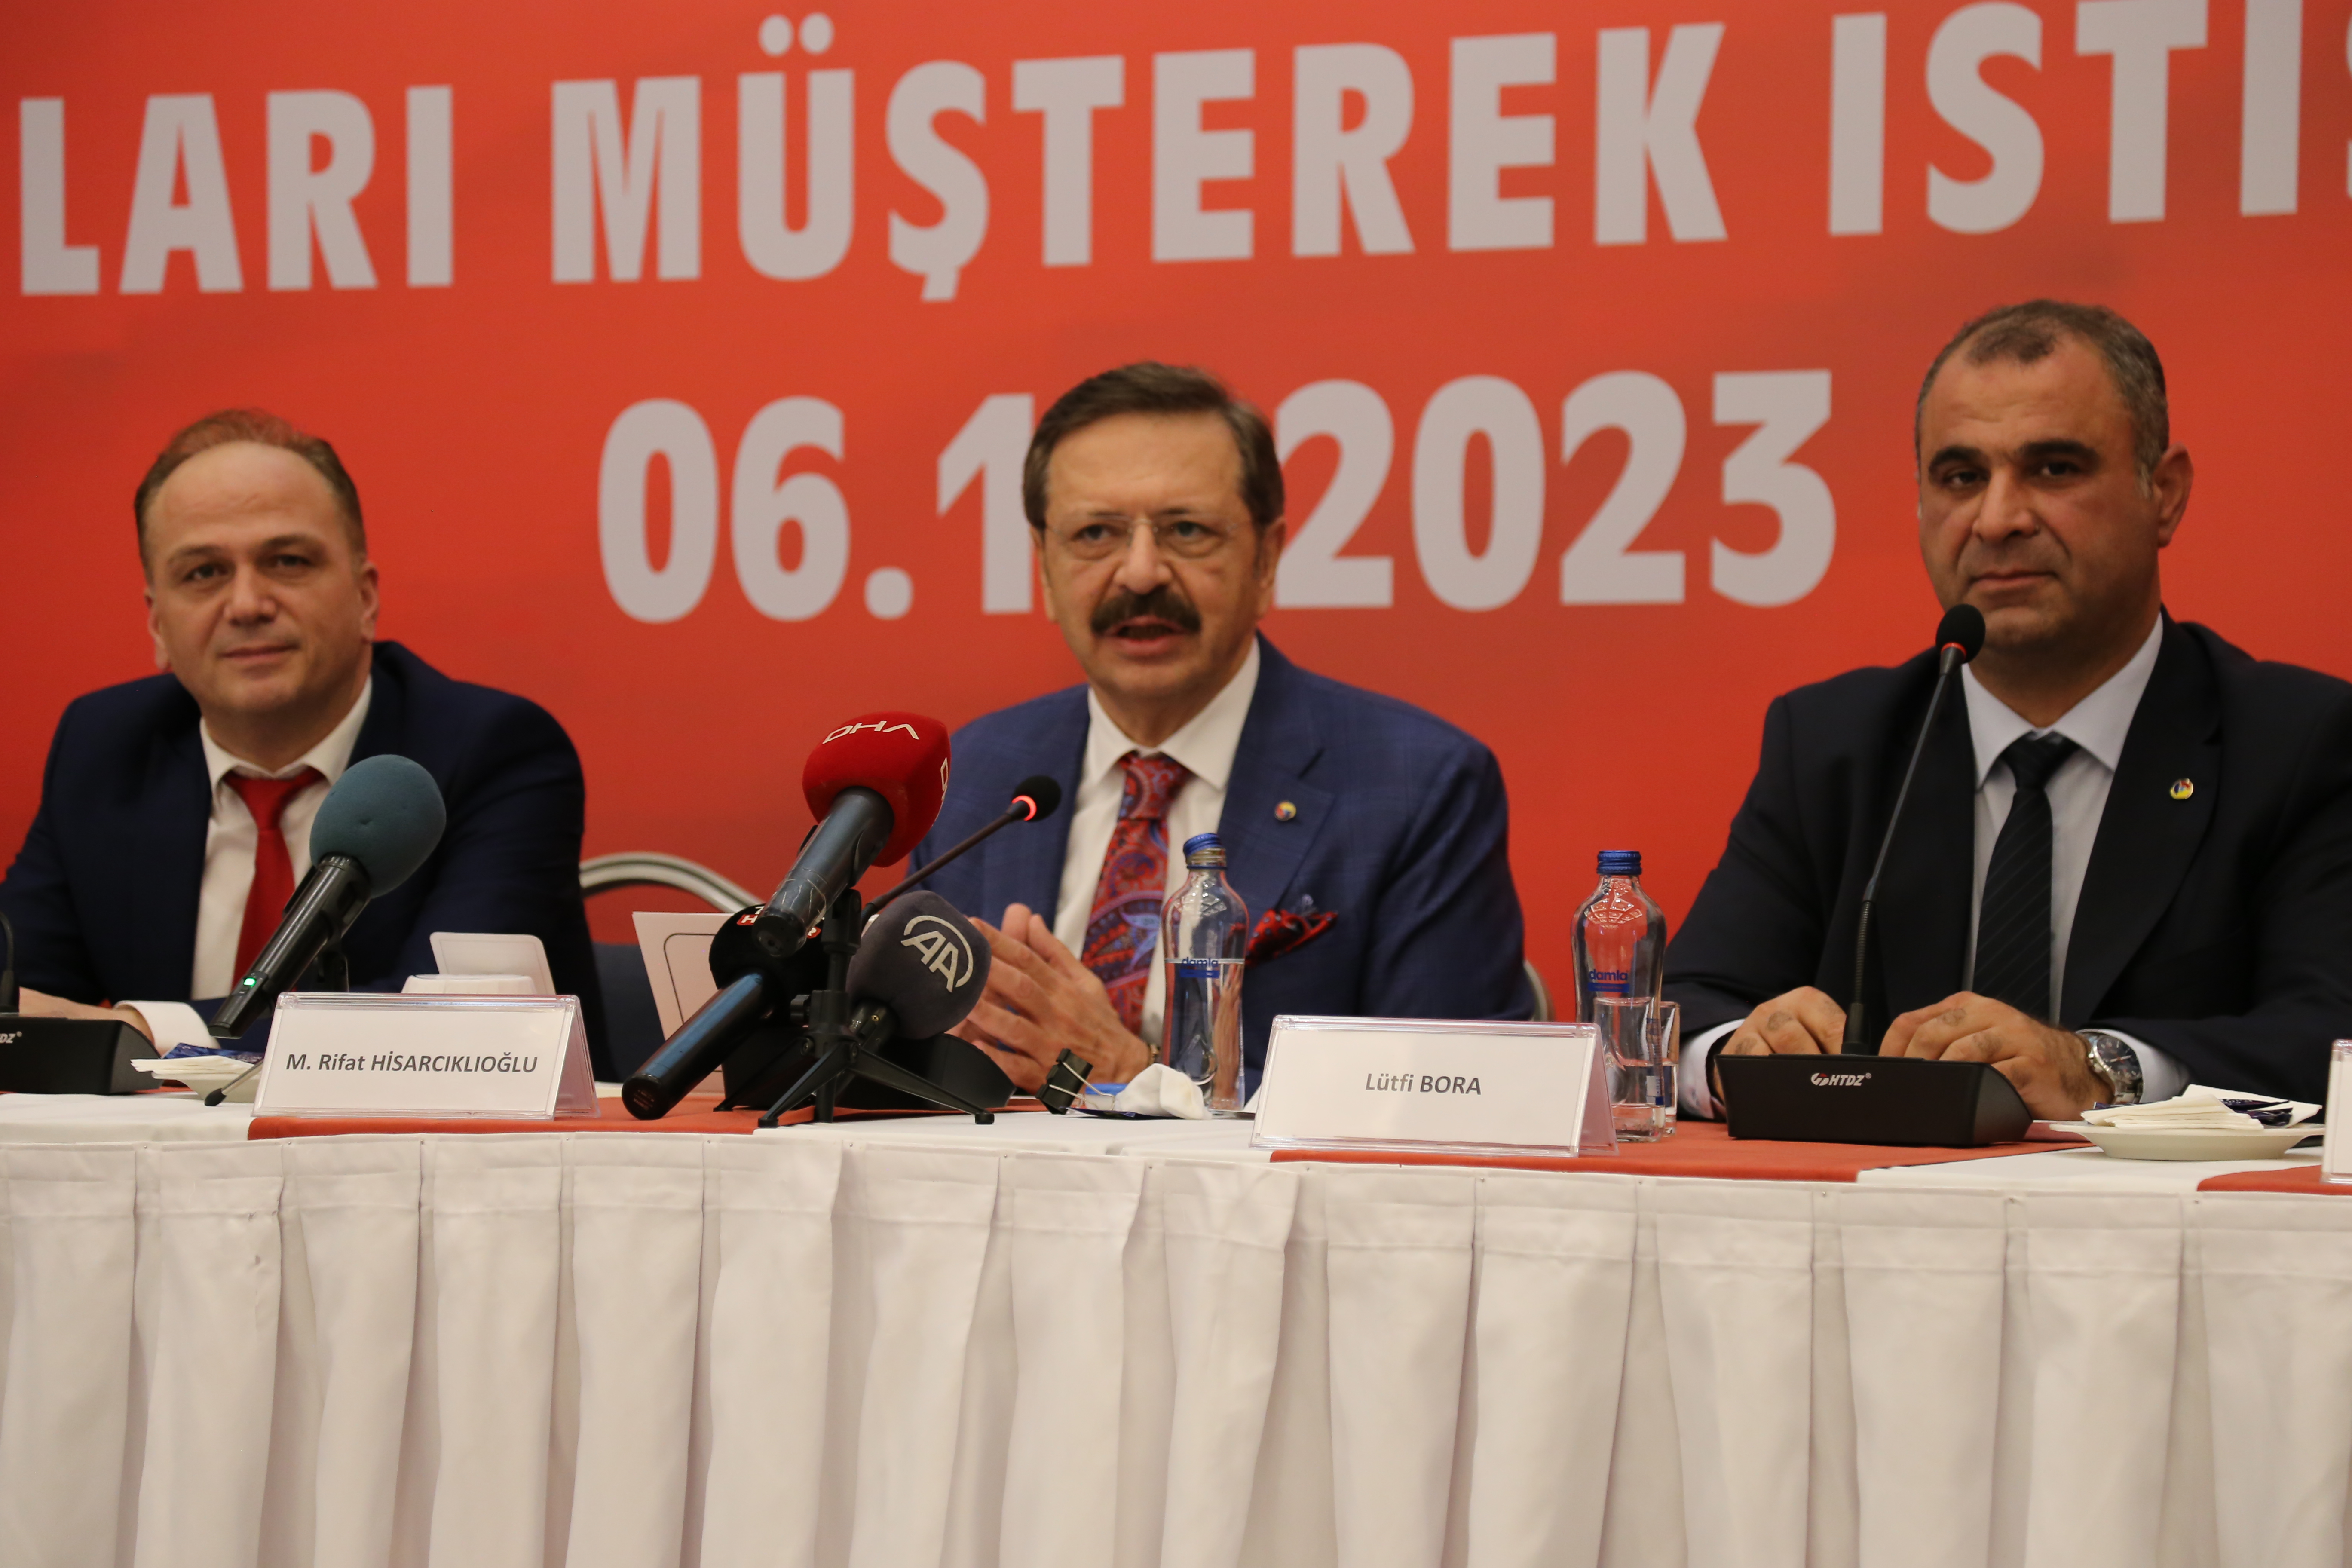 TOBB Başkanı Hisarcıklıoğlu, Tokat Oda Borsa Müşterek İstişare Toplantısı'nda konuştu: